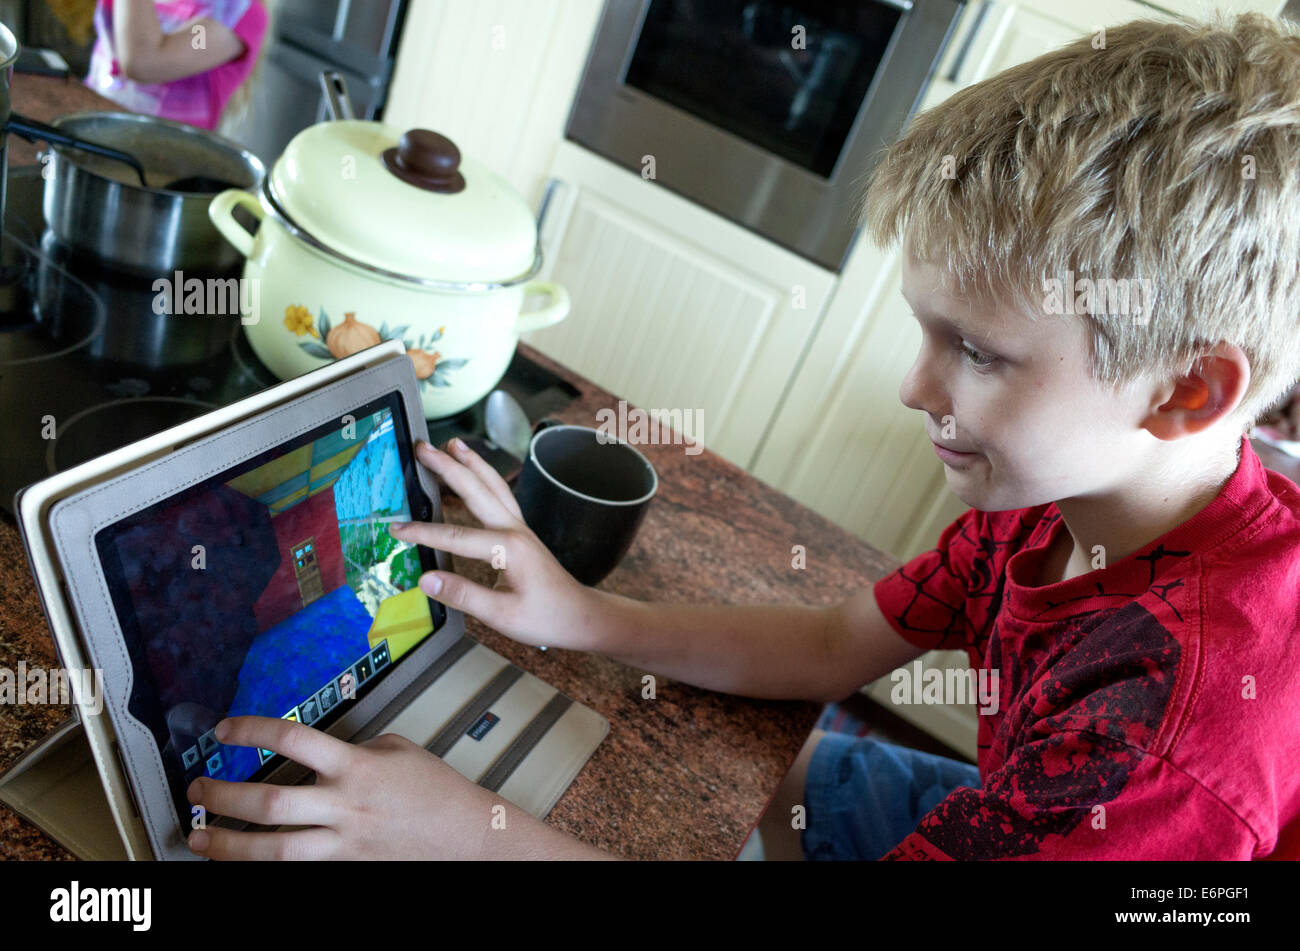 Polnischen jungen Alter von 10 Jahren entwerfen Häuser auf seinem Tablettcomputer in der Küche. Zawady Polen Stockfoto